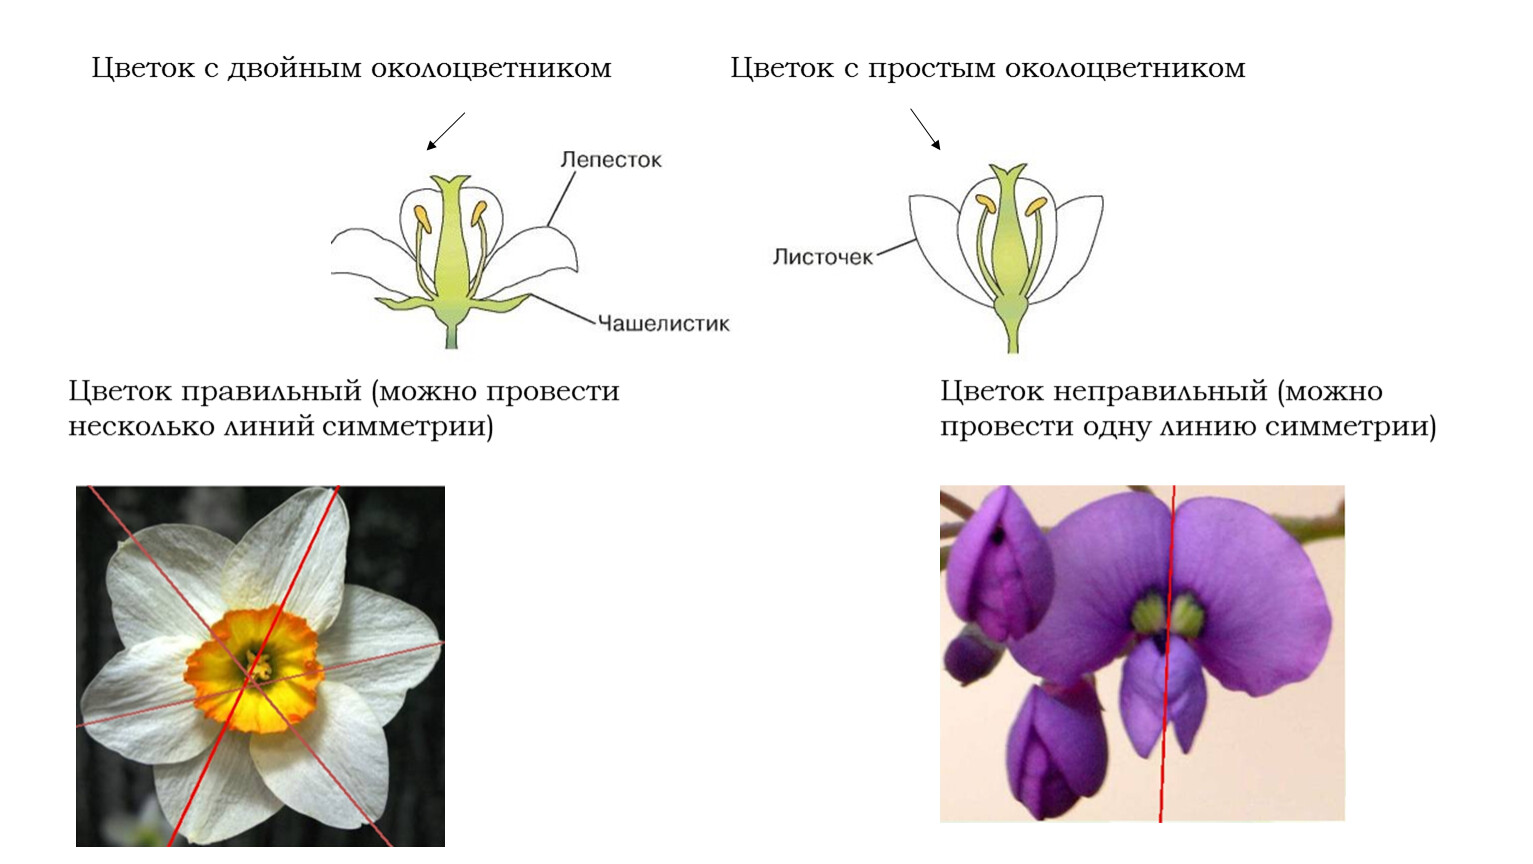 Какой околоцветник у растений. Цветок с двойным околоцветником. Формула цветка с простым околоцветником. Женский цветок с простым околоцветником.